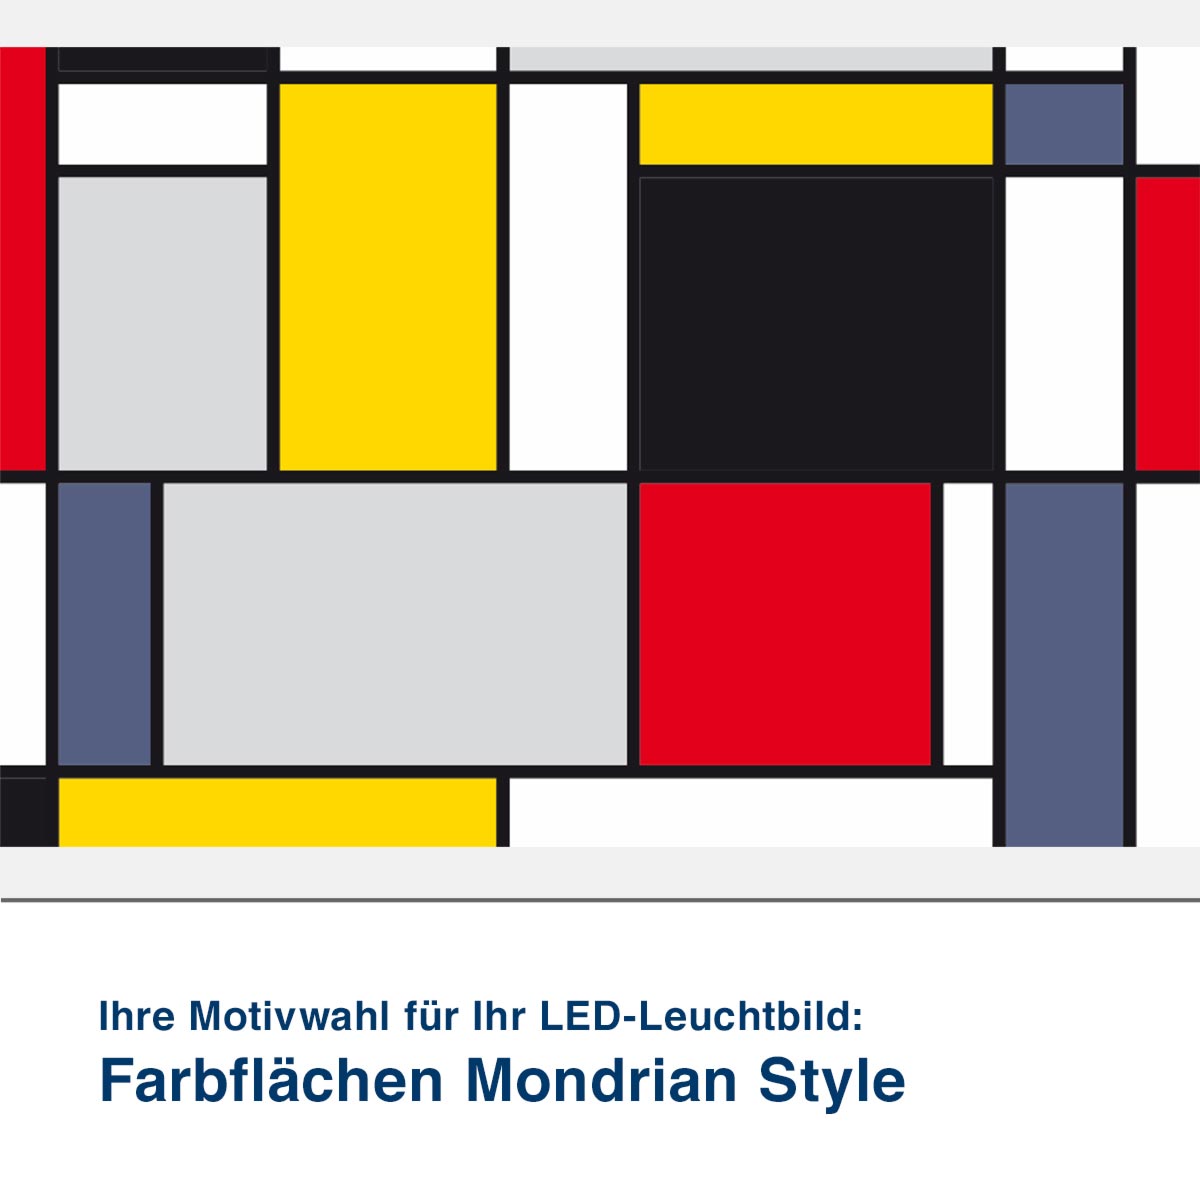 LED-Leuchtbild Farbflächen Mondrian Style